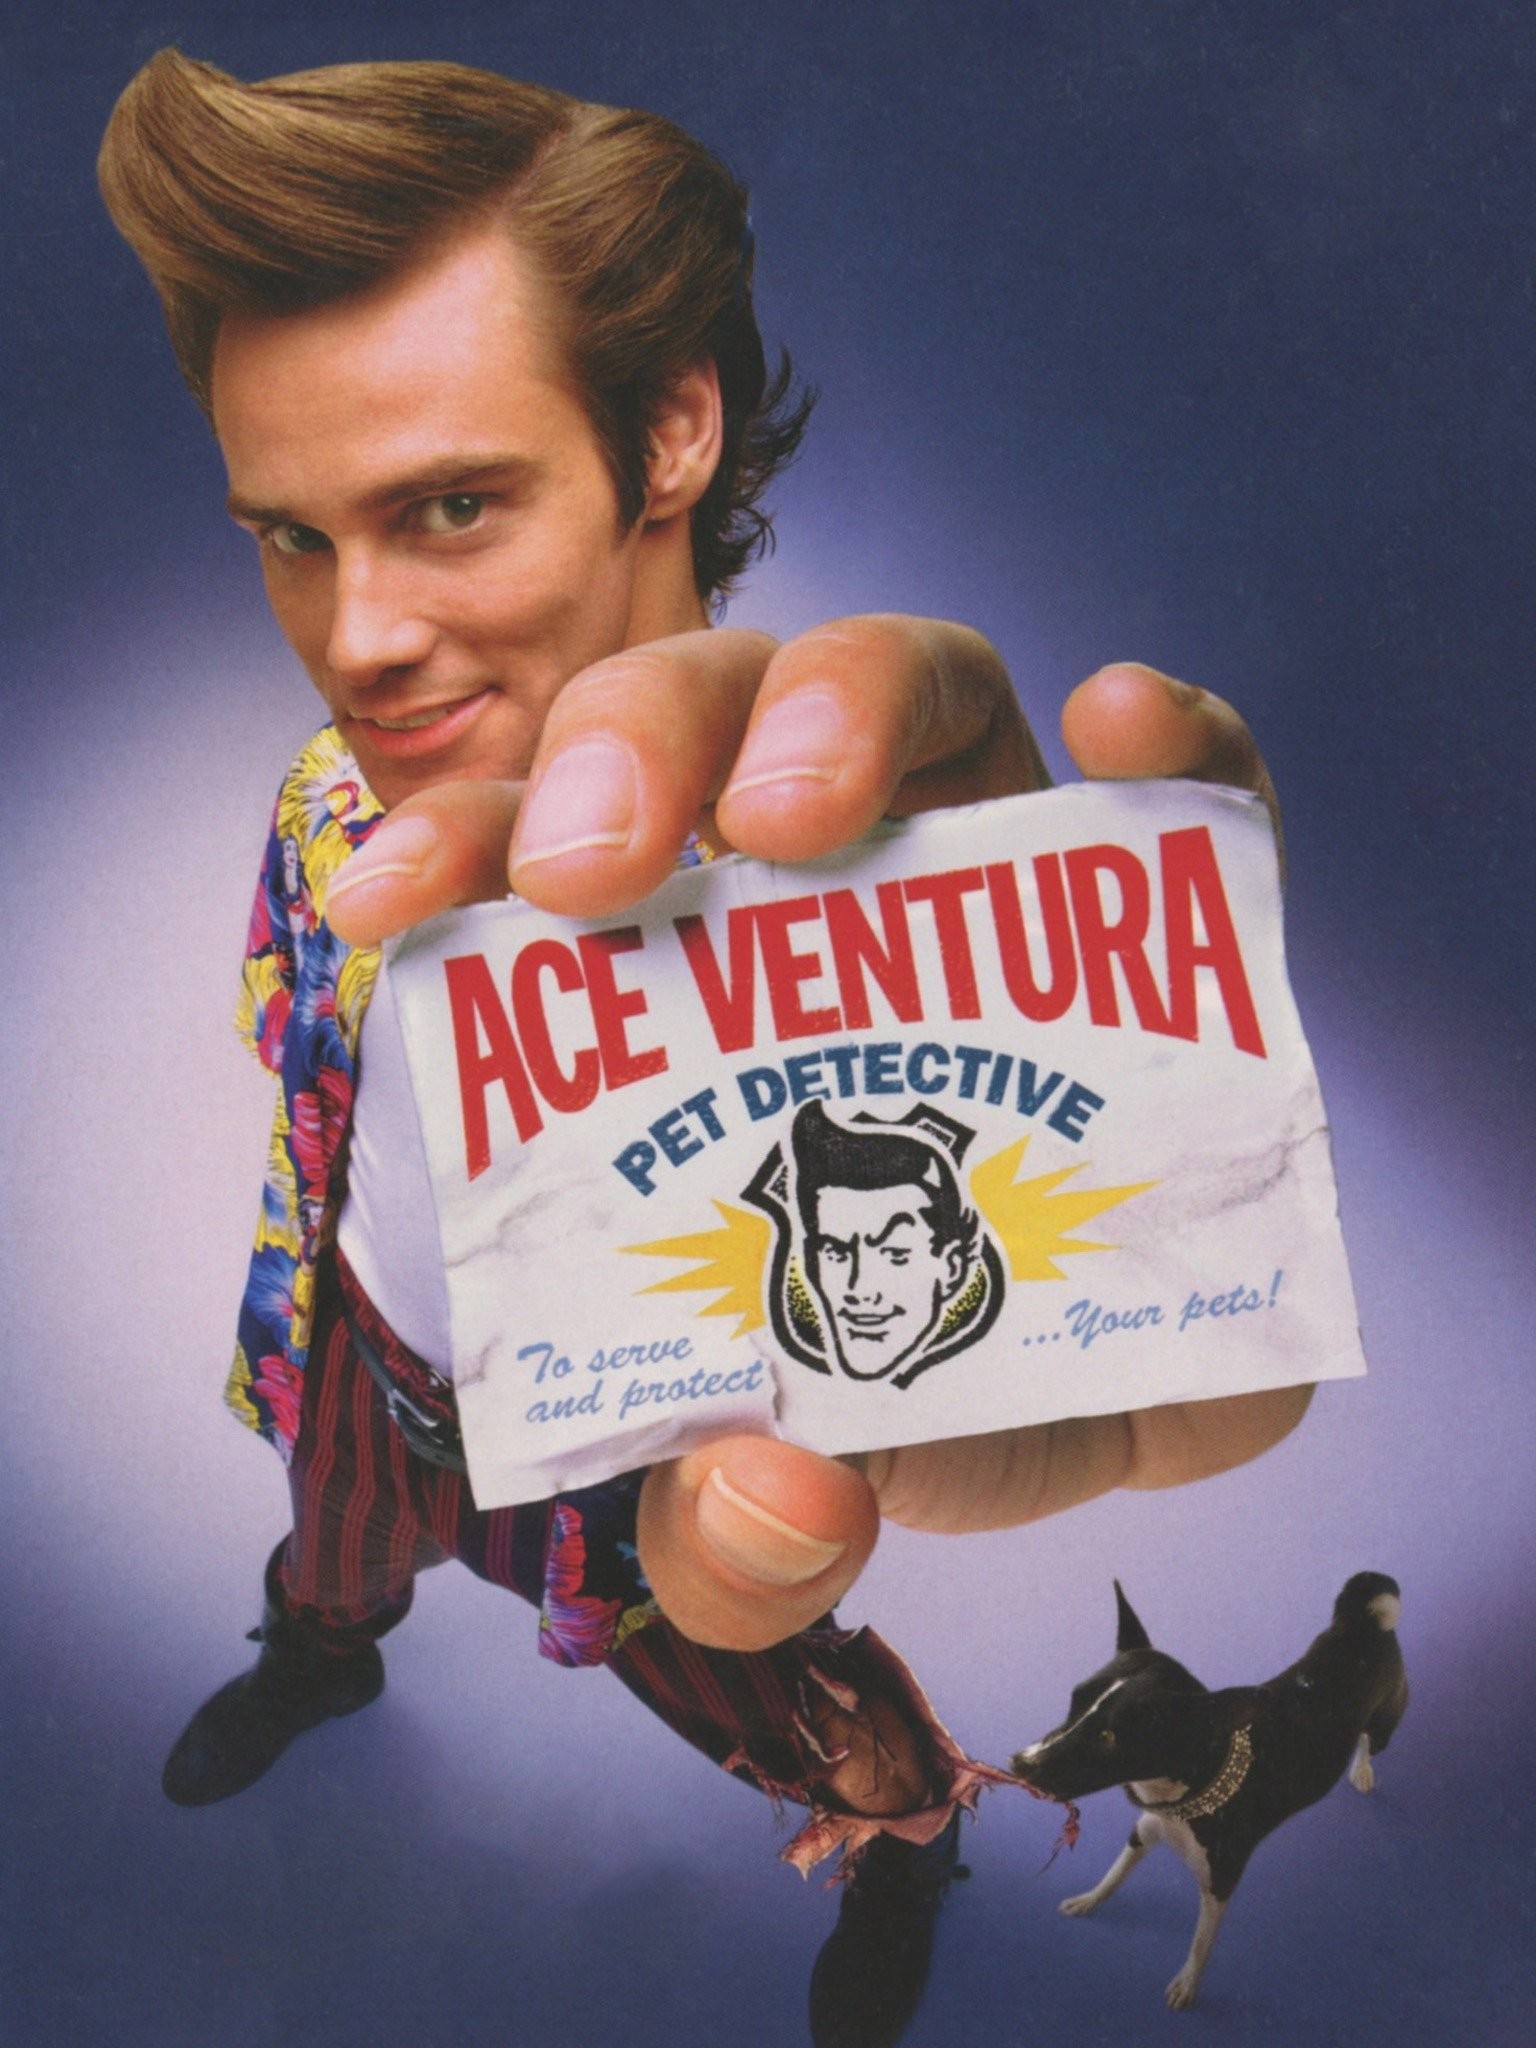 Ace Ventura: Pet Detective (1993 